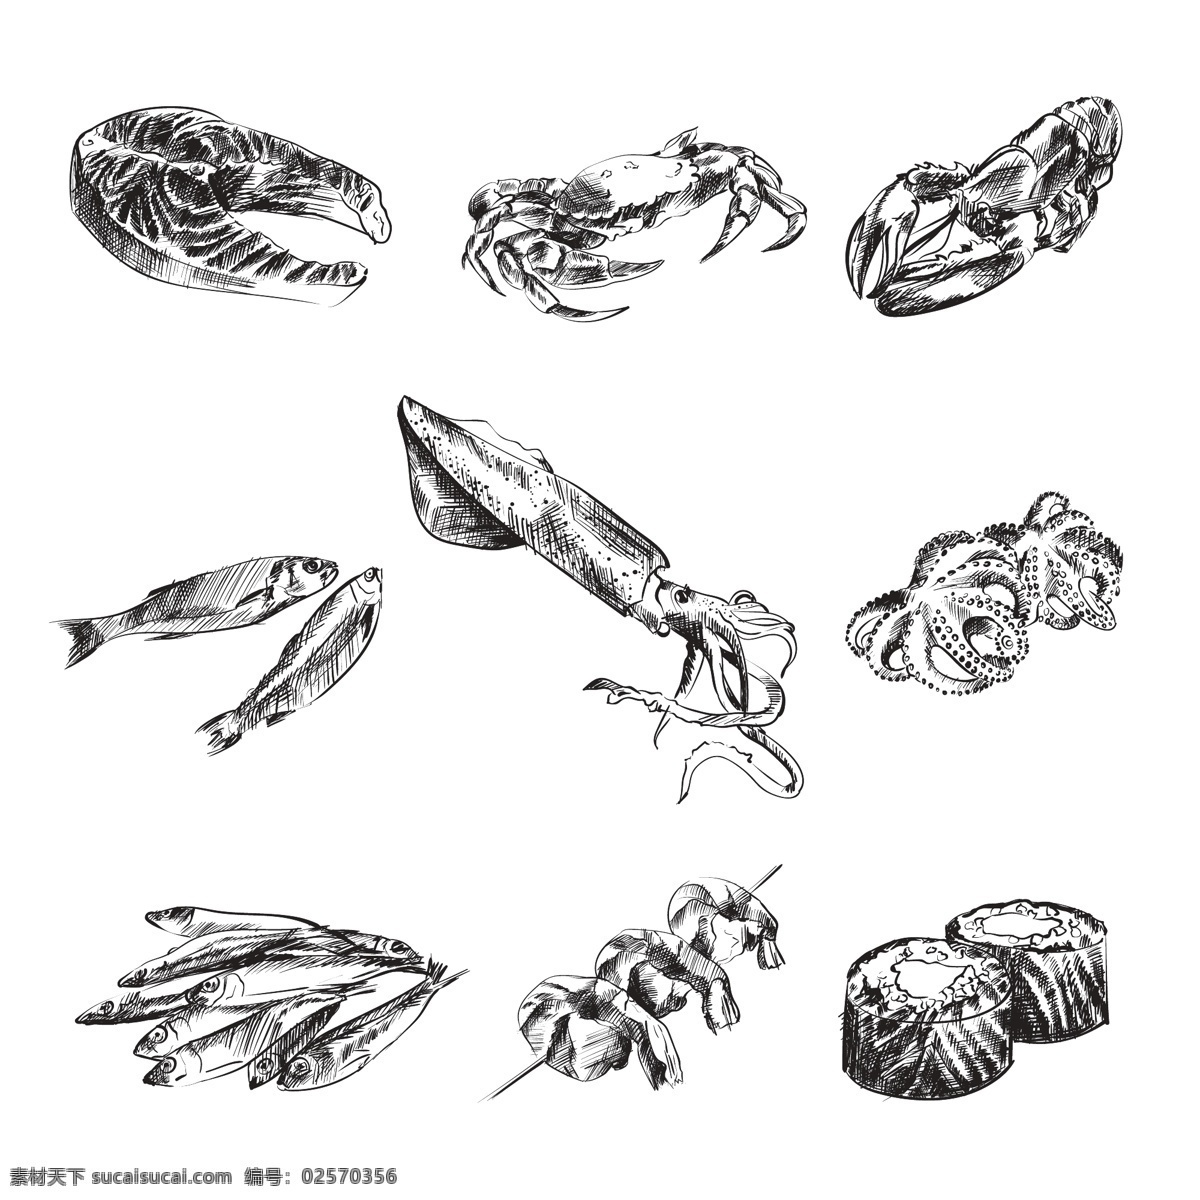 黑白 手绘 海鲜 食 材 插画 元素 三文鱼 螃蟹 龙虾 鱿鱼 章鱼 寿司